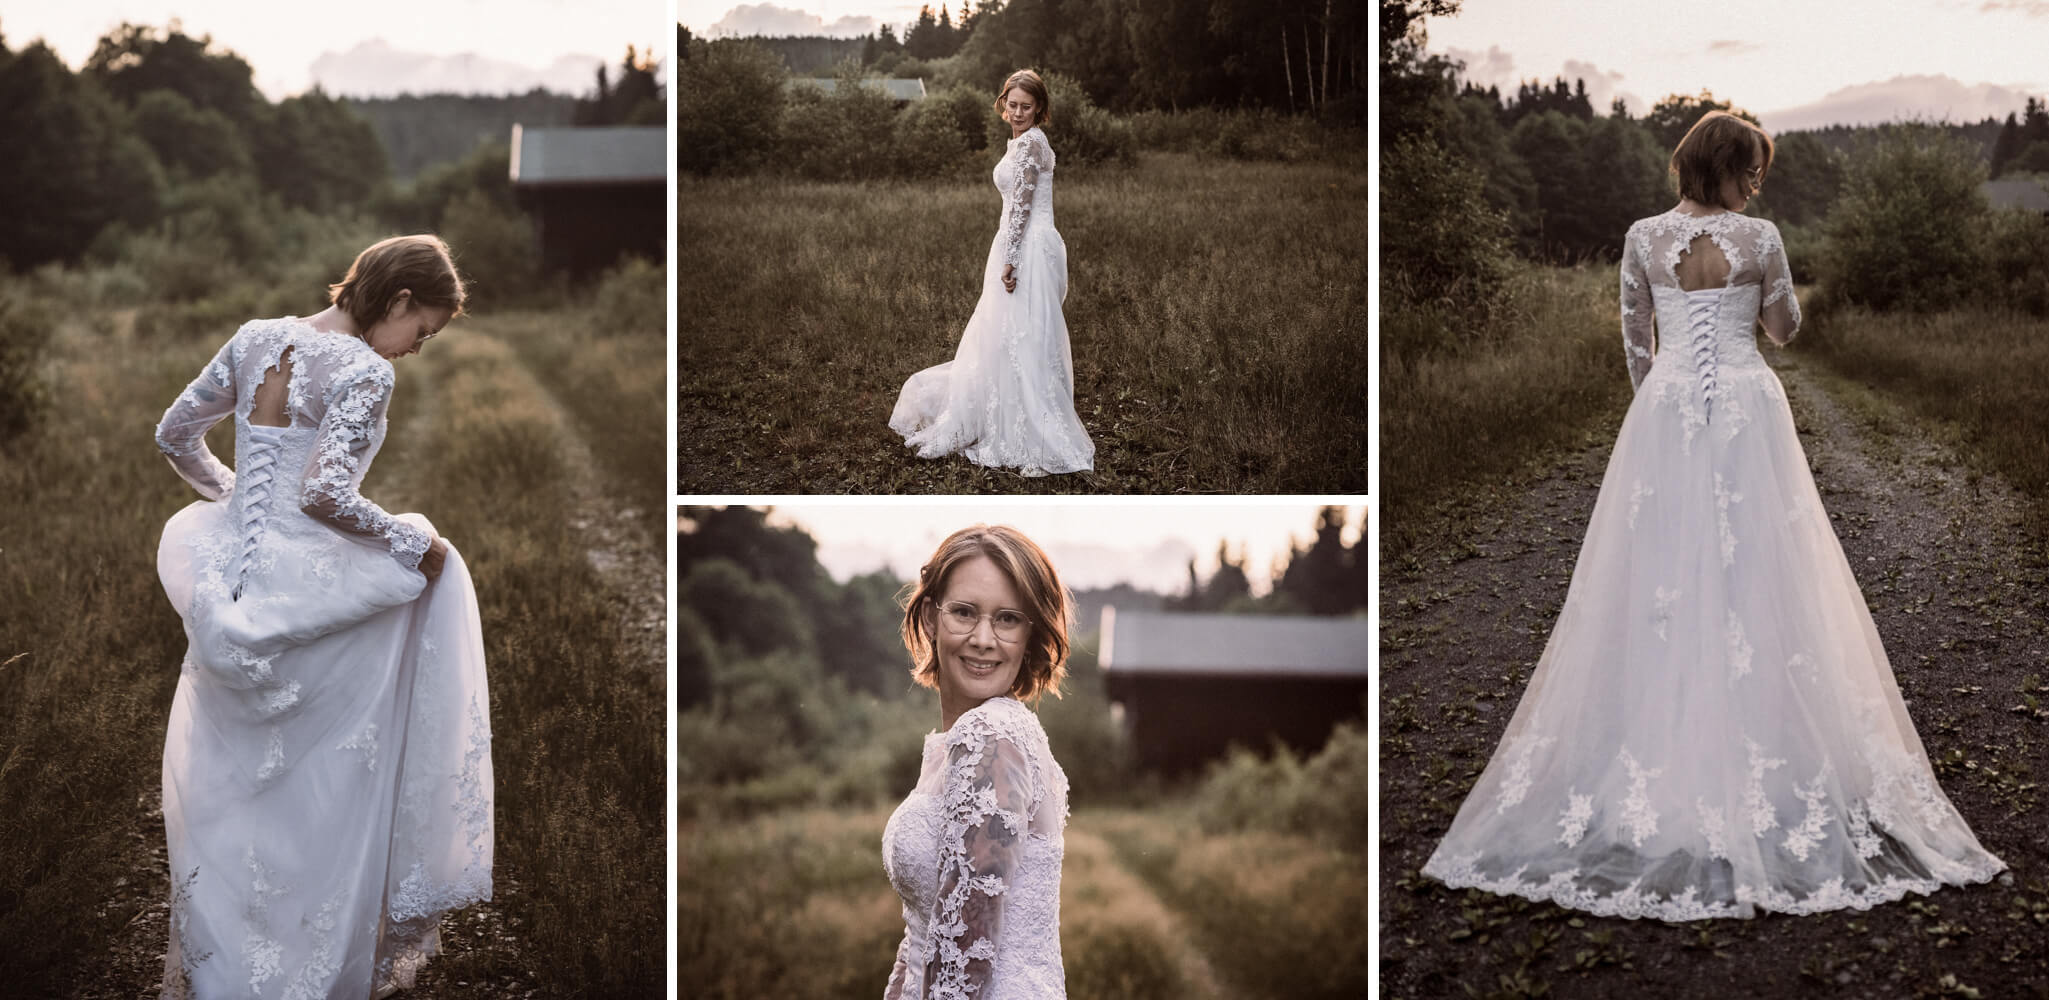 AfterWedding-Brautfotoshooting-Hochzeitskleid